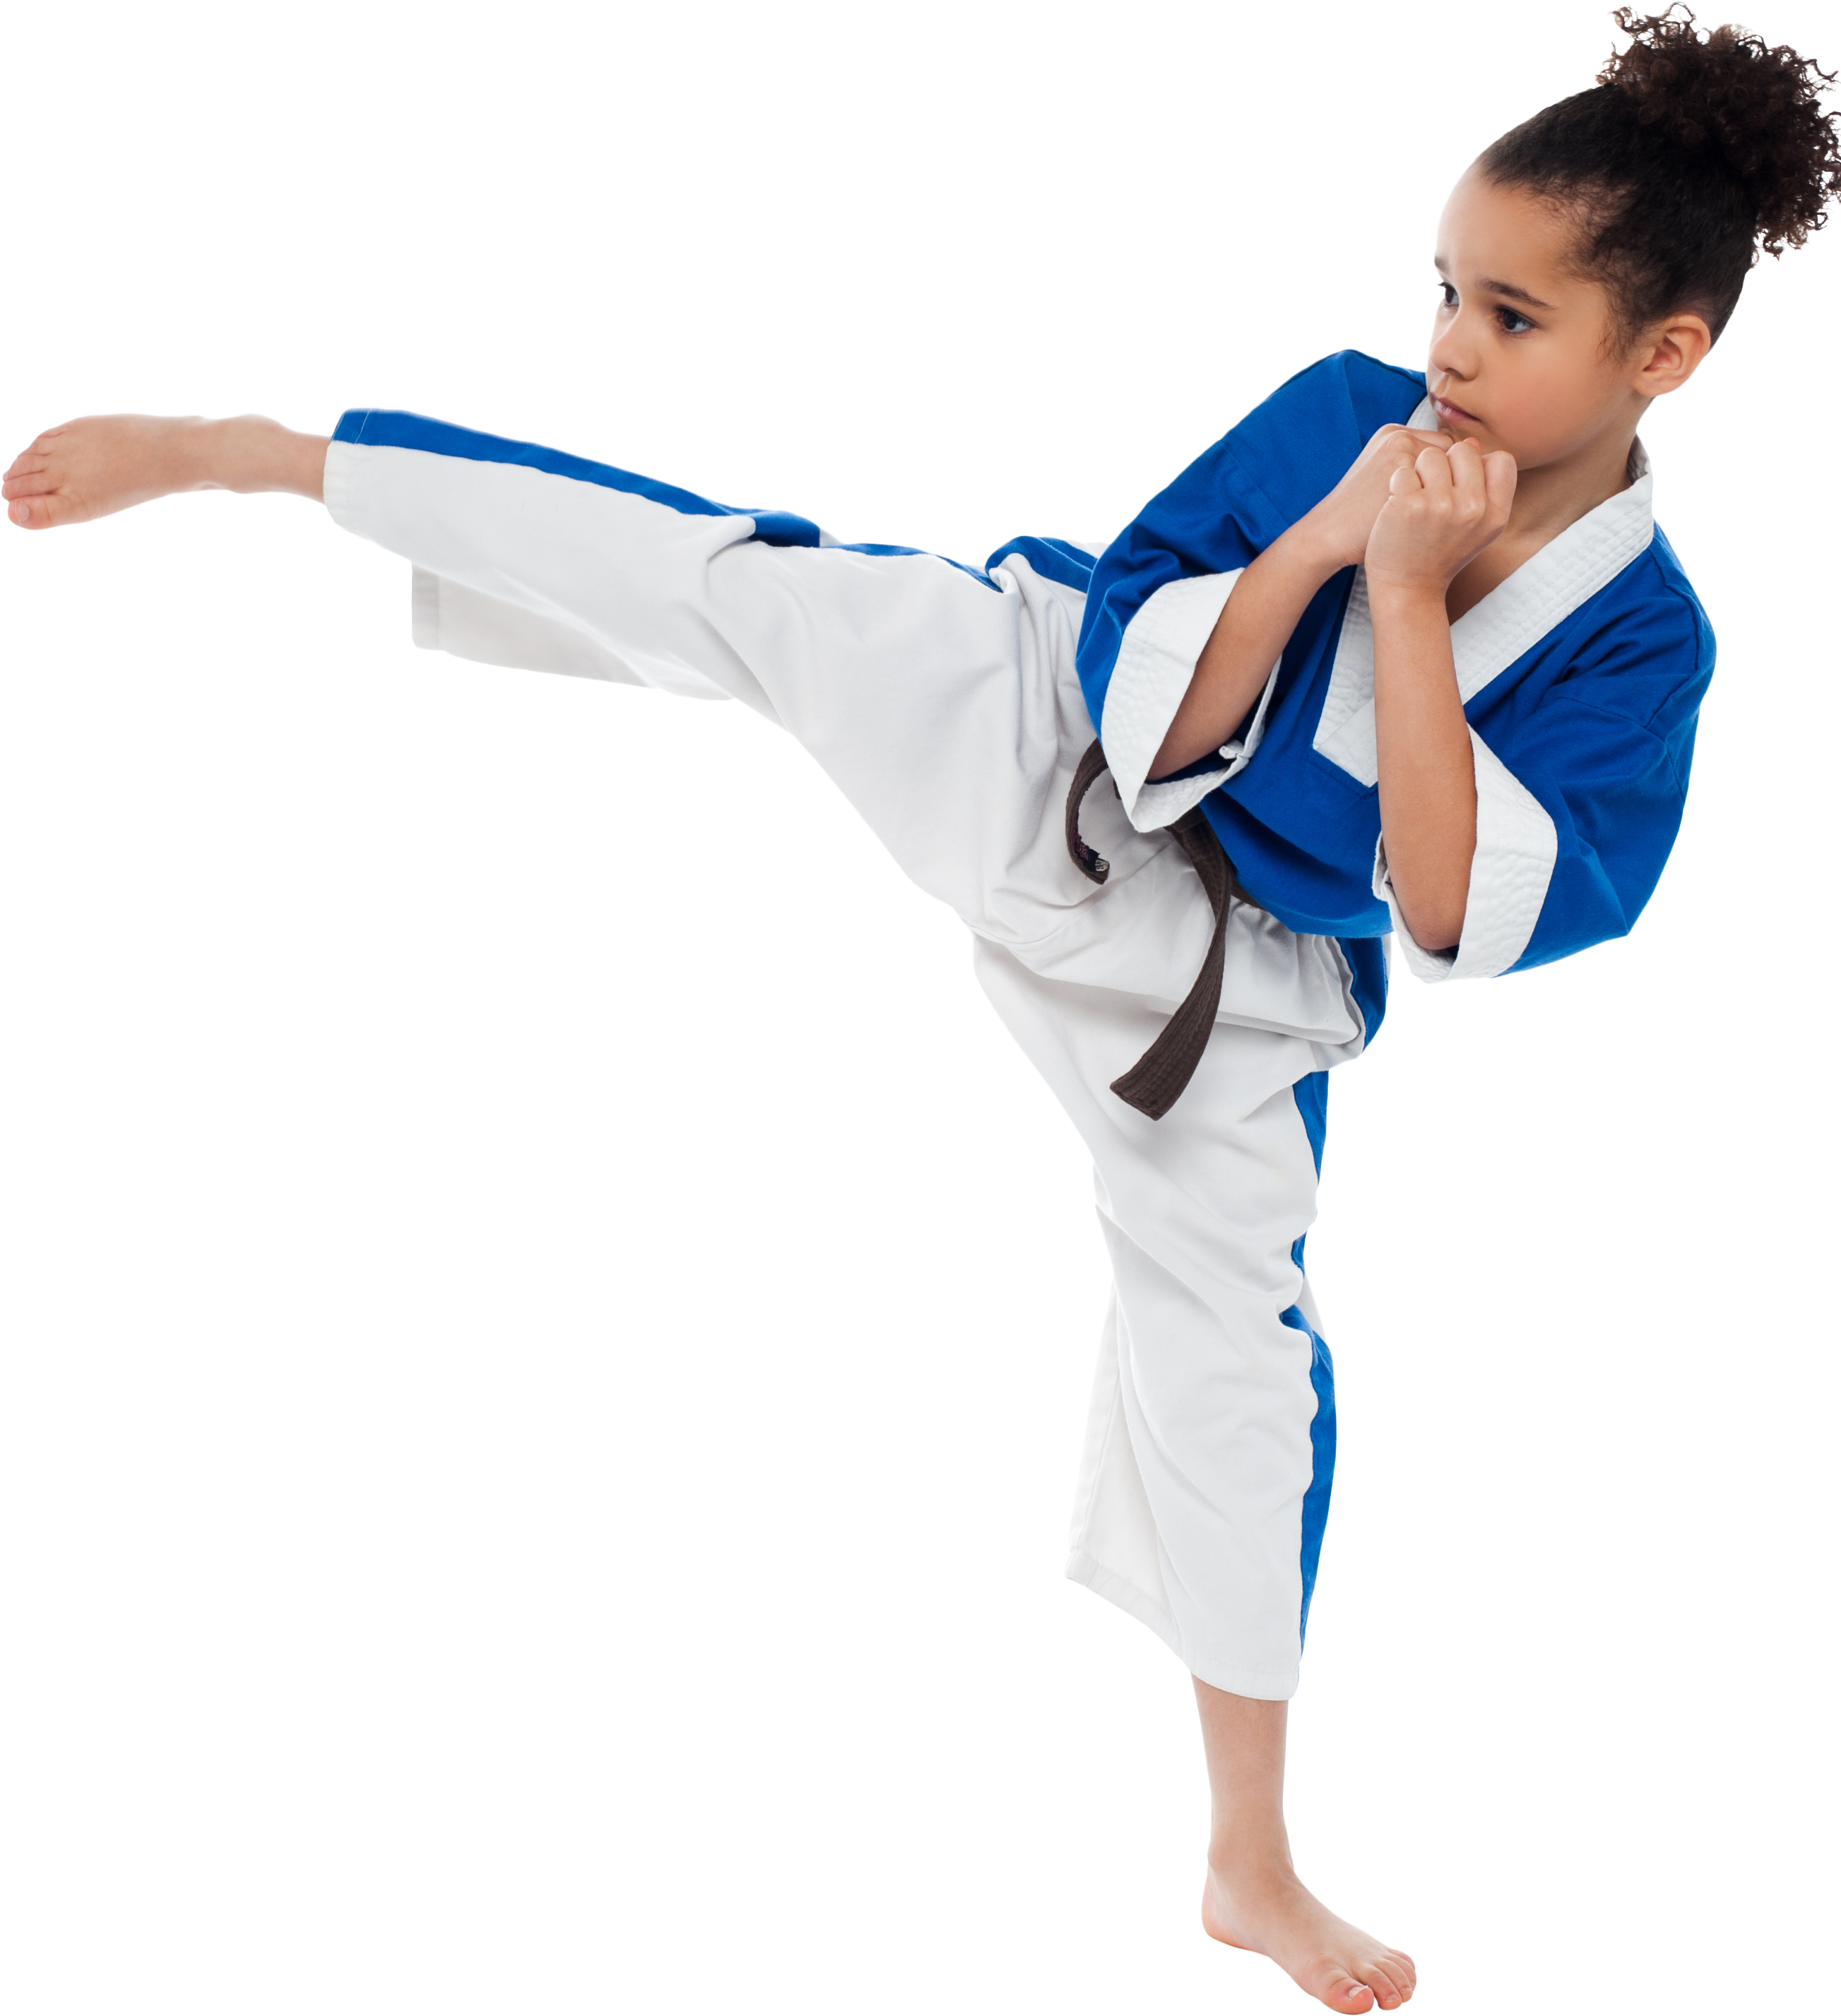 A Girl In A Karate Uniform